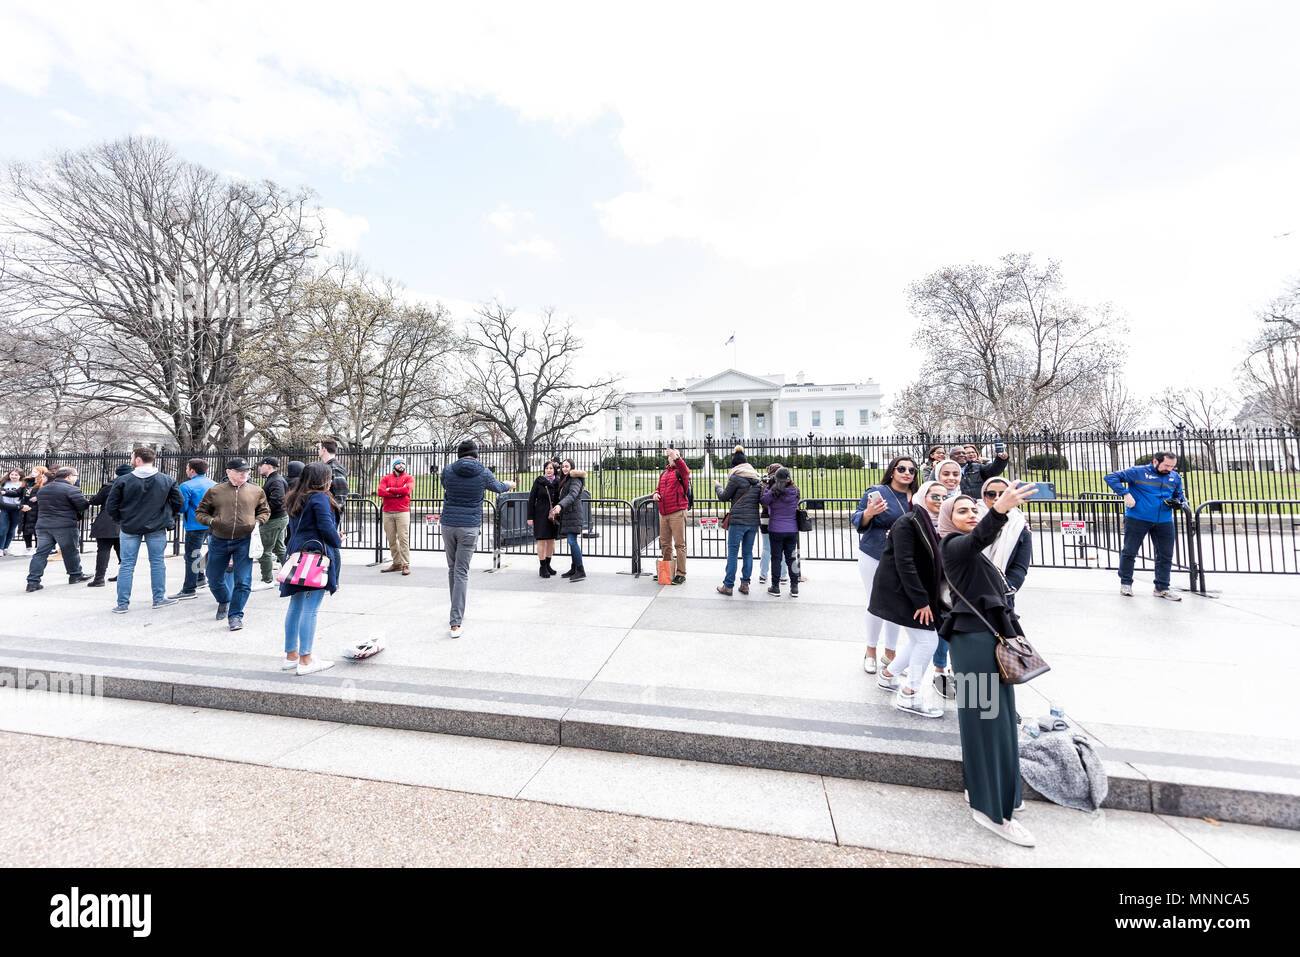 Washington DC, USA - 9. März 2018: die Masse der Leute im White House Präsident Gebäude in der Hauptstadt der Vereinigten Staaten Fotos gesammelt, selfi Stockfoto